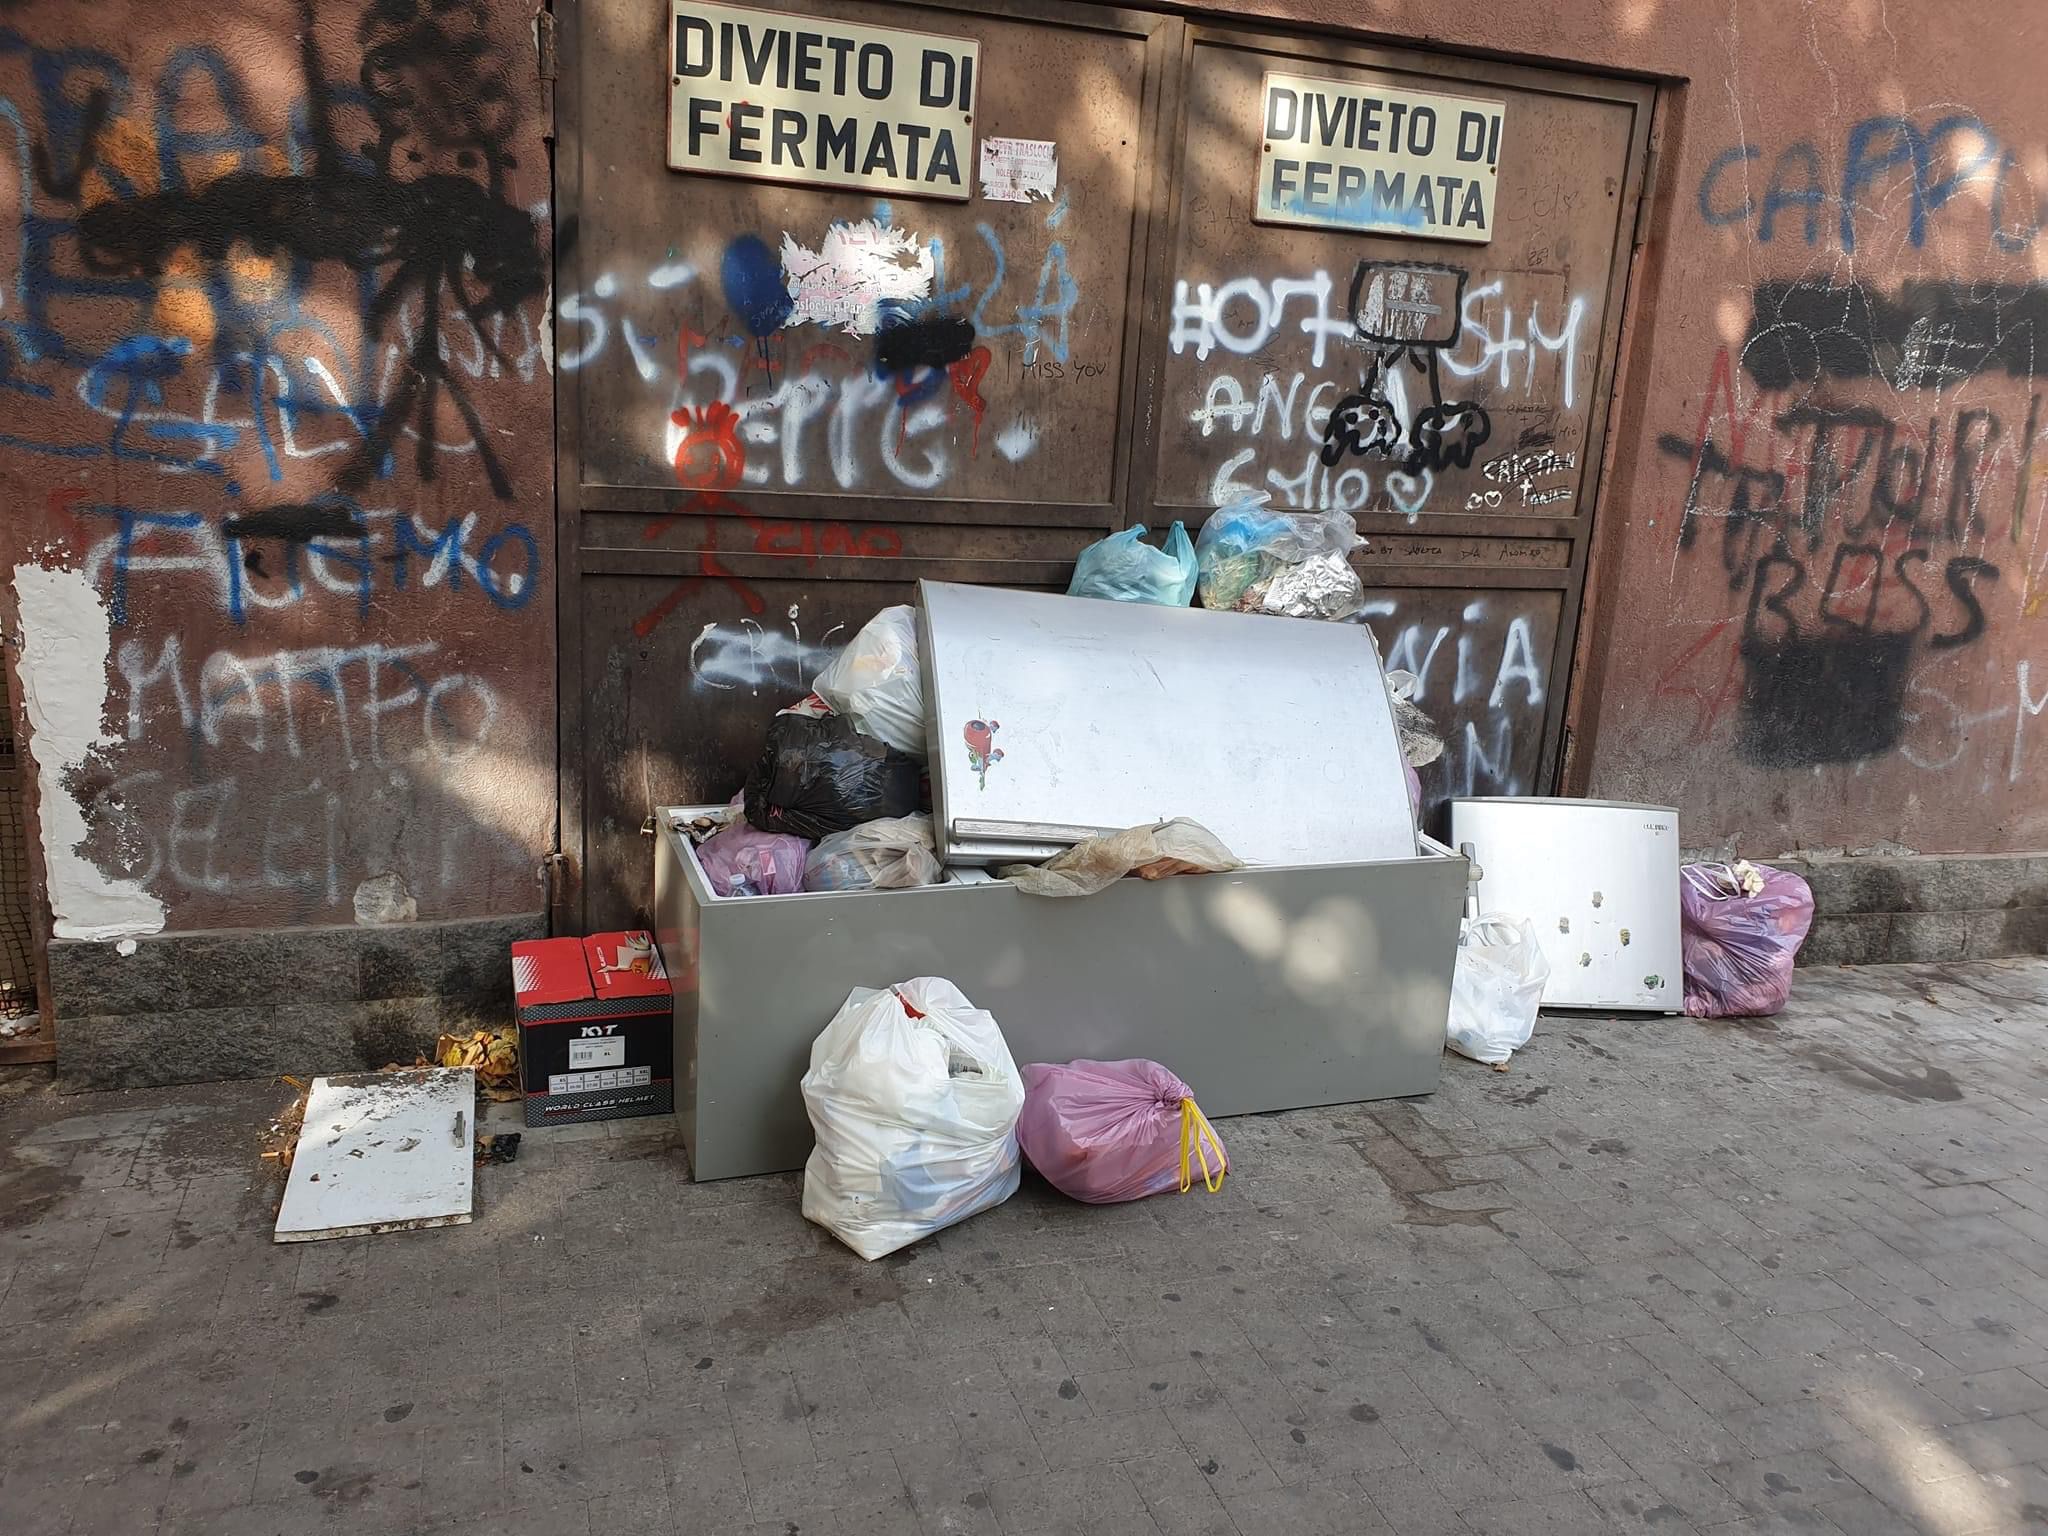 Rifiuti e sporcizia nel centro storico di Catania. Paolo Fasanaro: “Abbiamo superato il limite”